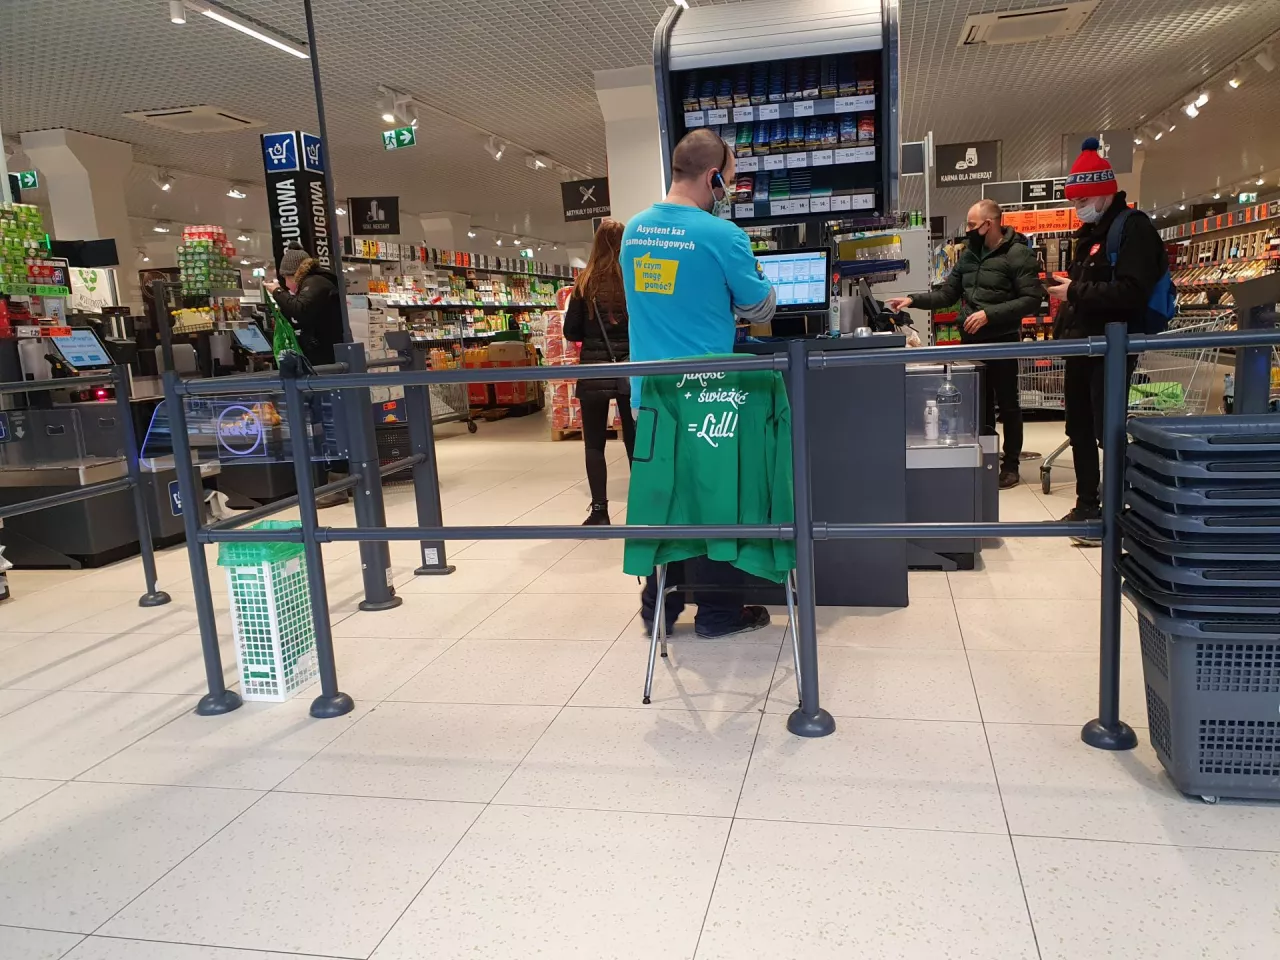 Strefa z kasami samoobsługowymi w sklepie Lidl w Warszawie (fot. wiadomoscihandlowe.pl)